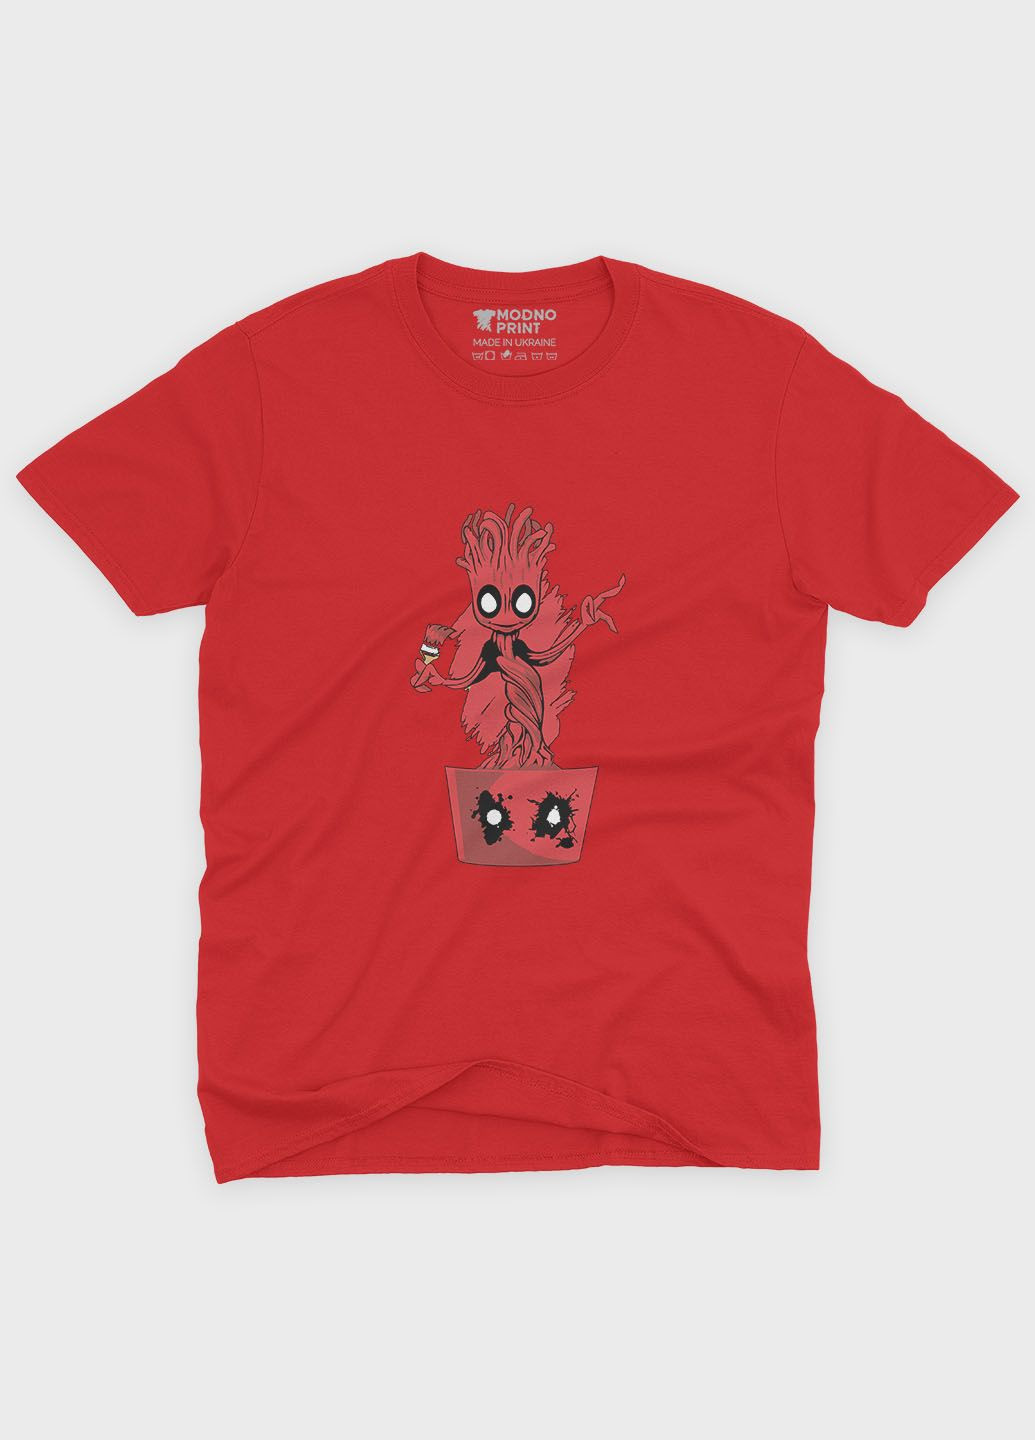 Красная демисезонная футболка для мальчика с принтом антигероя - дедпул (ts001-1-sre-006-015-033-b) Modno